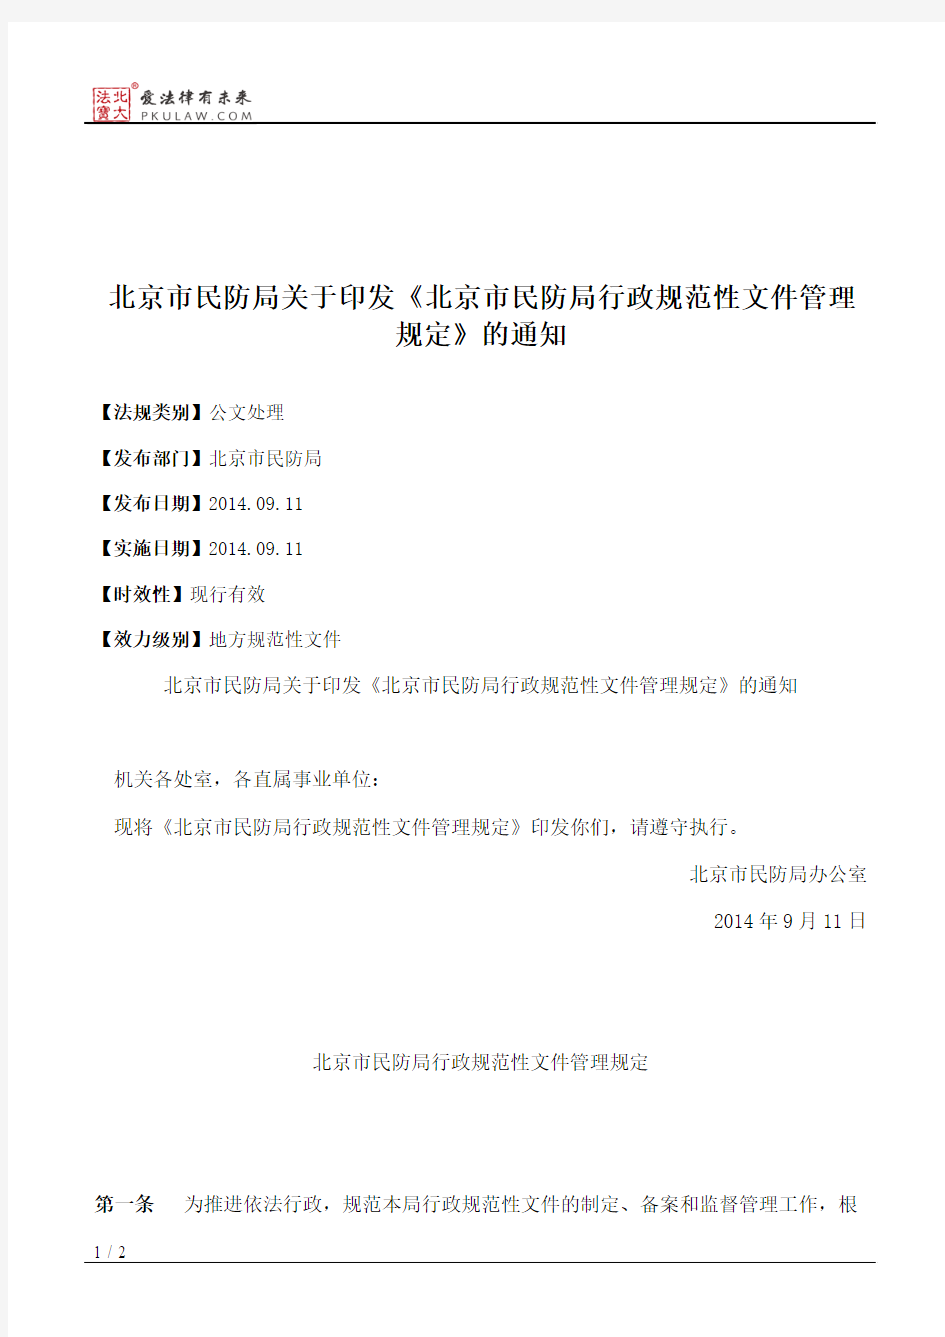 北京市民防局关于印发《北京市民防局行政规范性文件管理规定》的通知